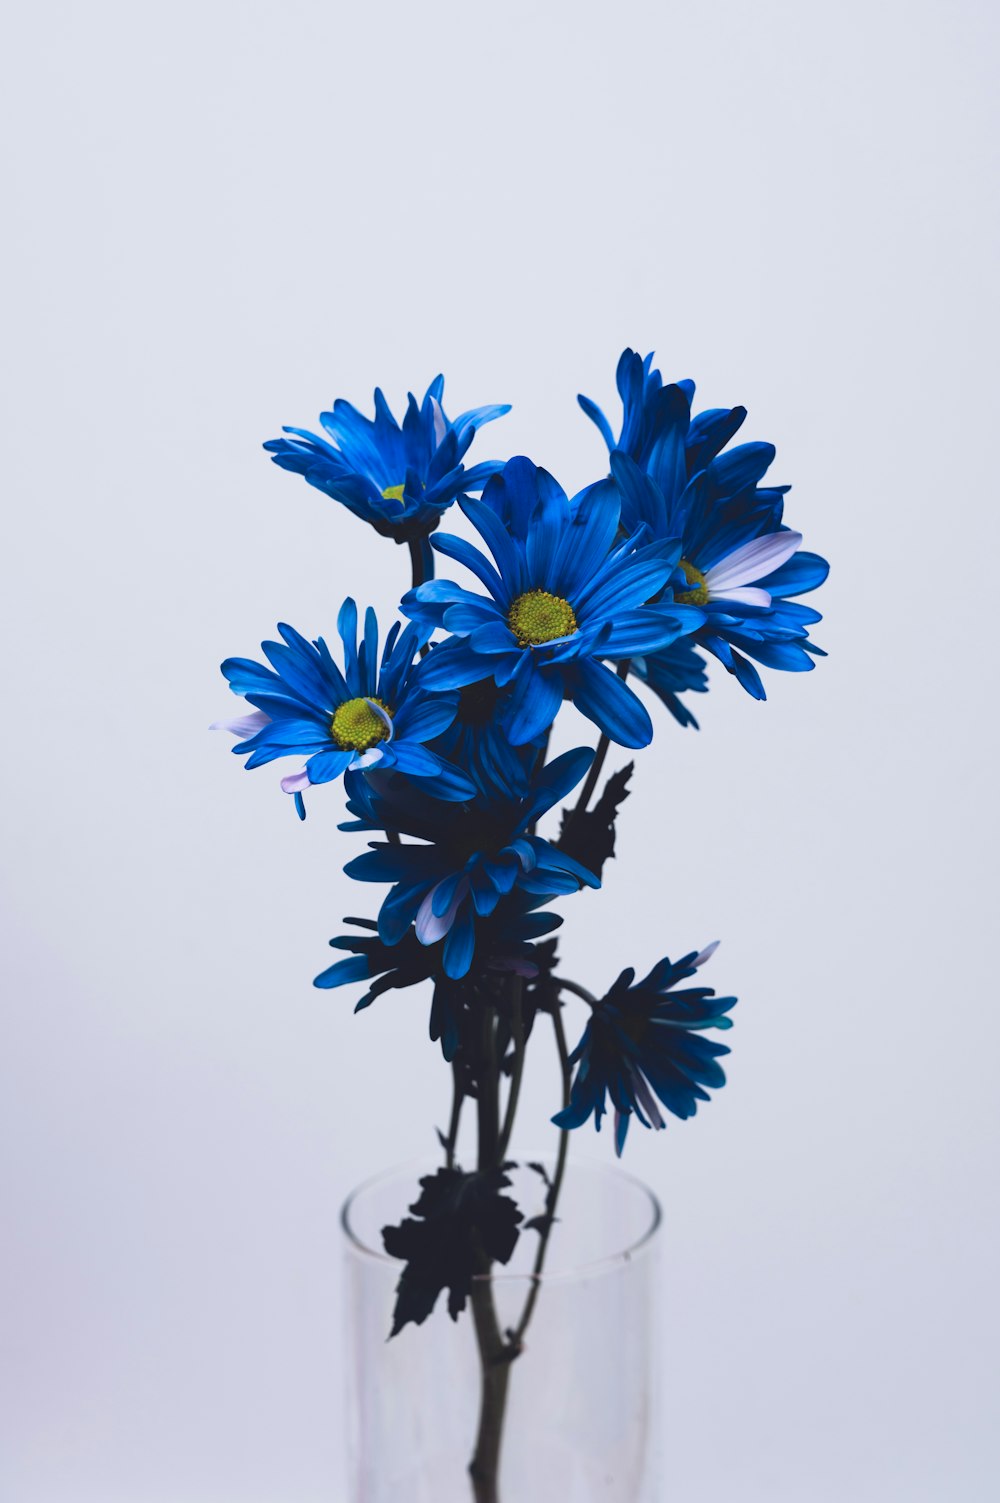 fiori blu e bianchi su sfondo bianco